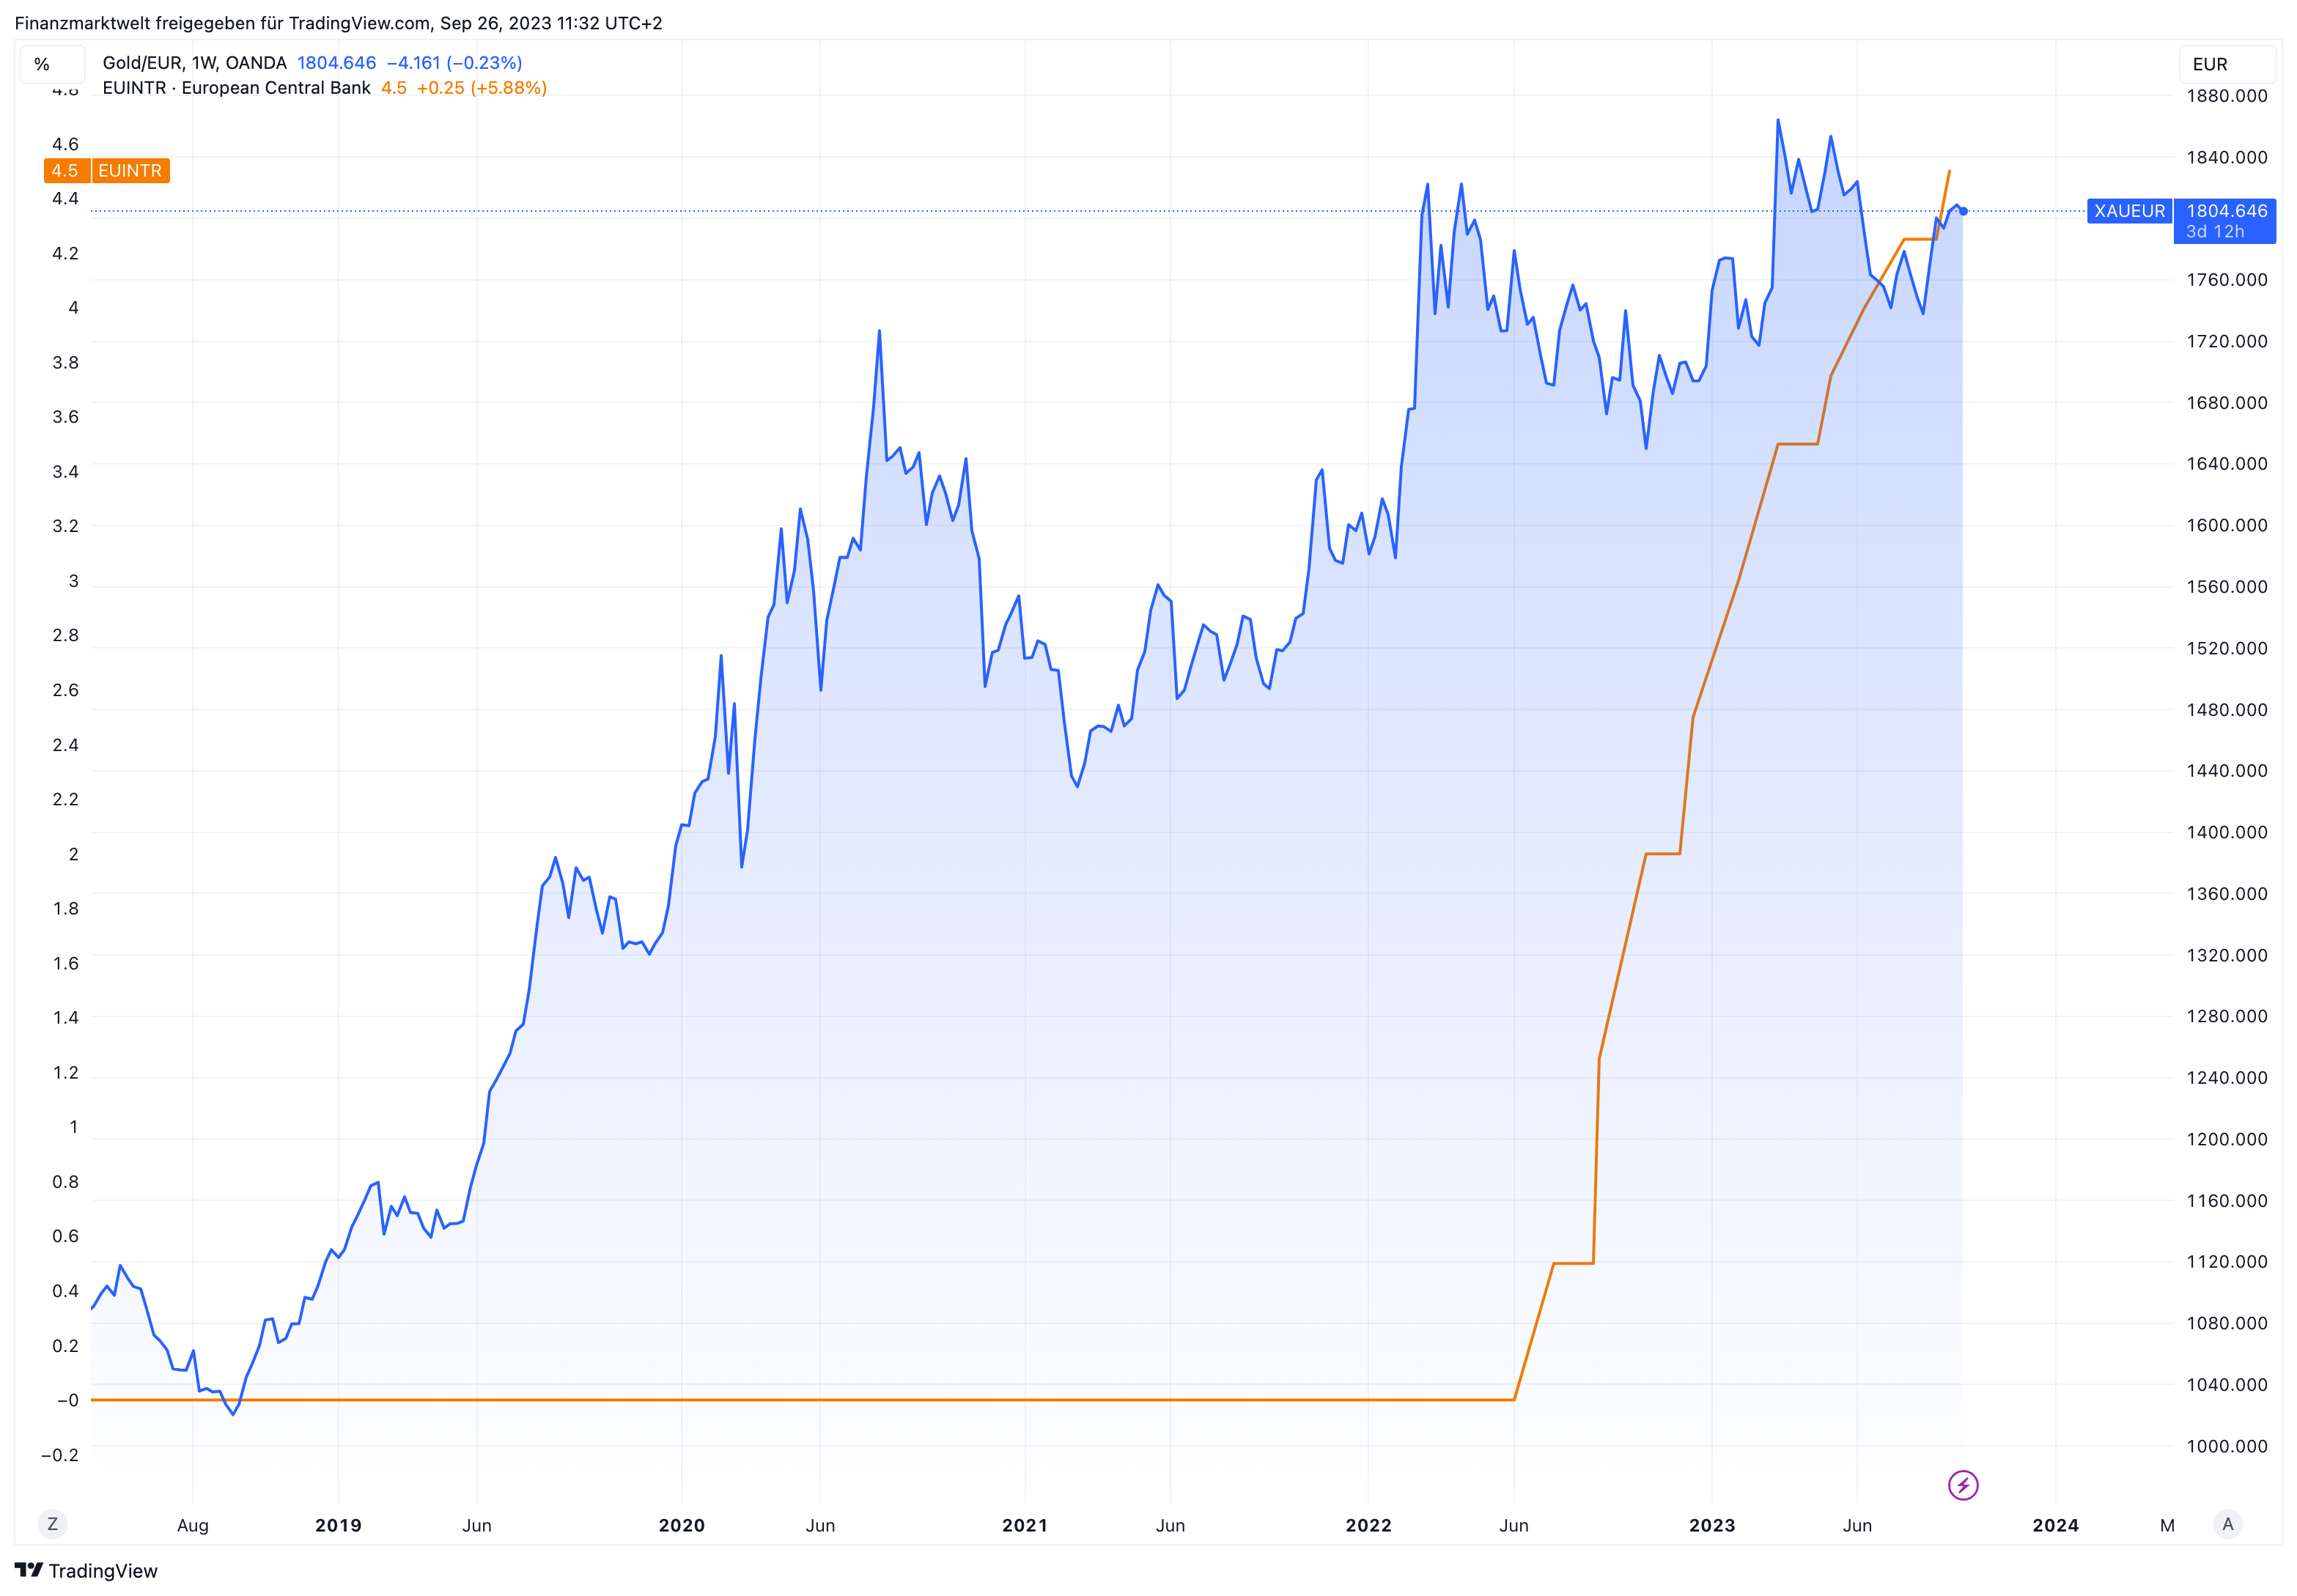 Langfristige Preisentwicklung bei Gold im Vergleich zum EZB-Leitzins